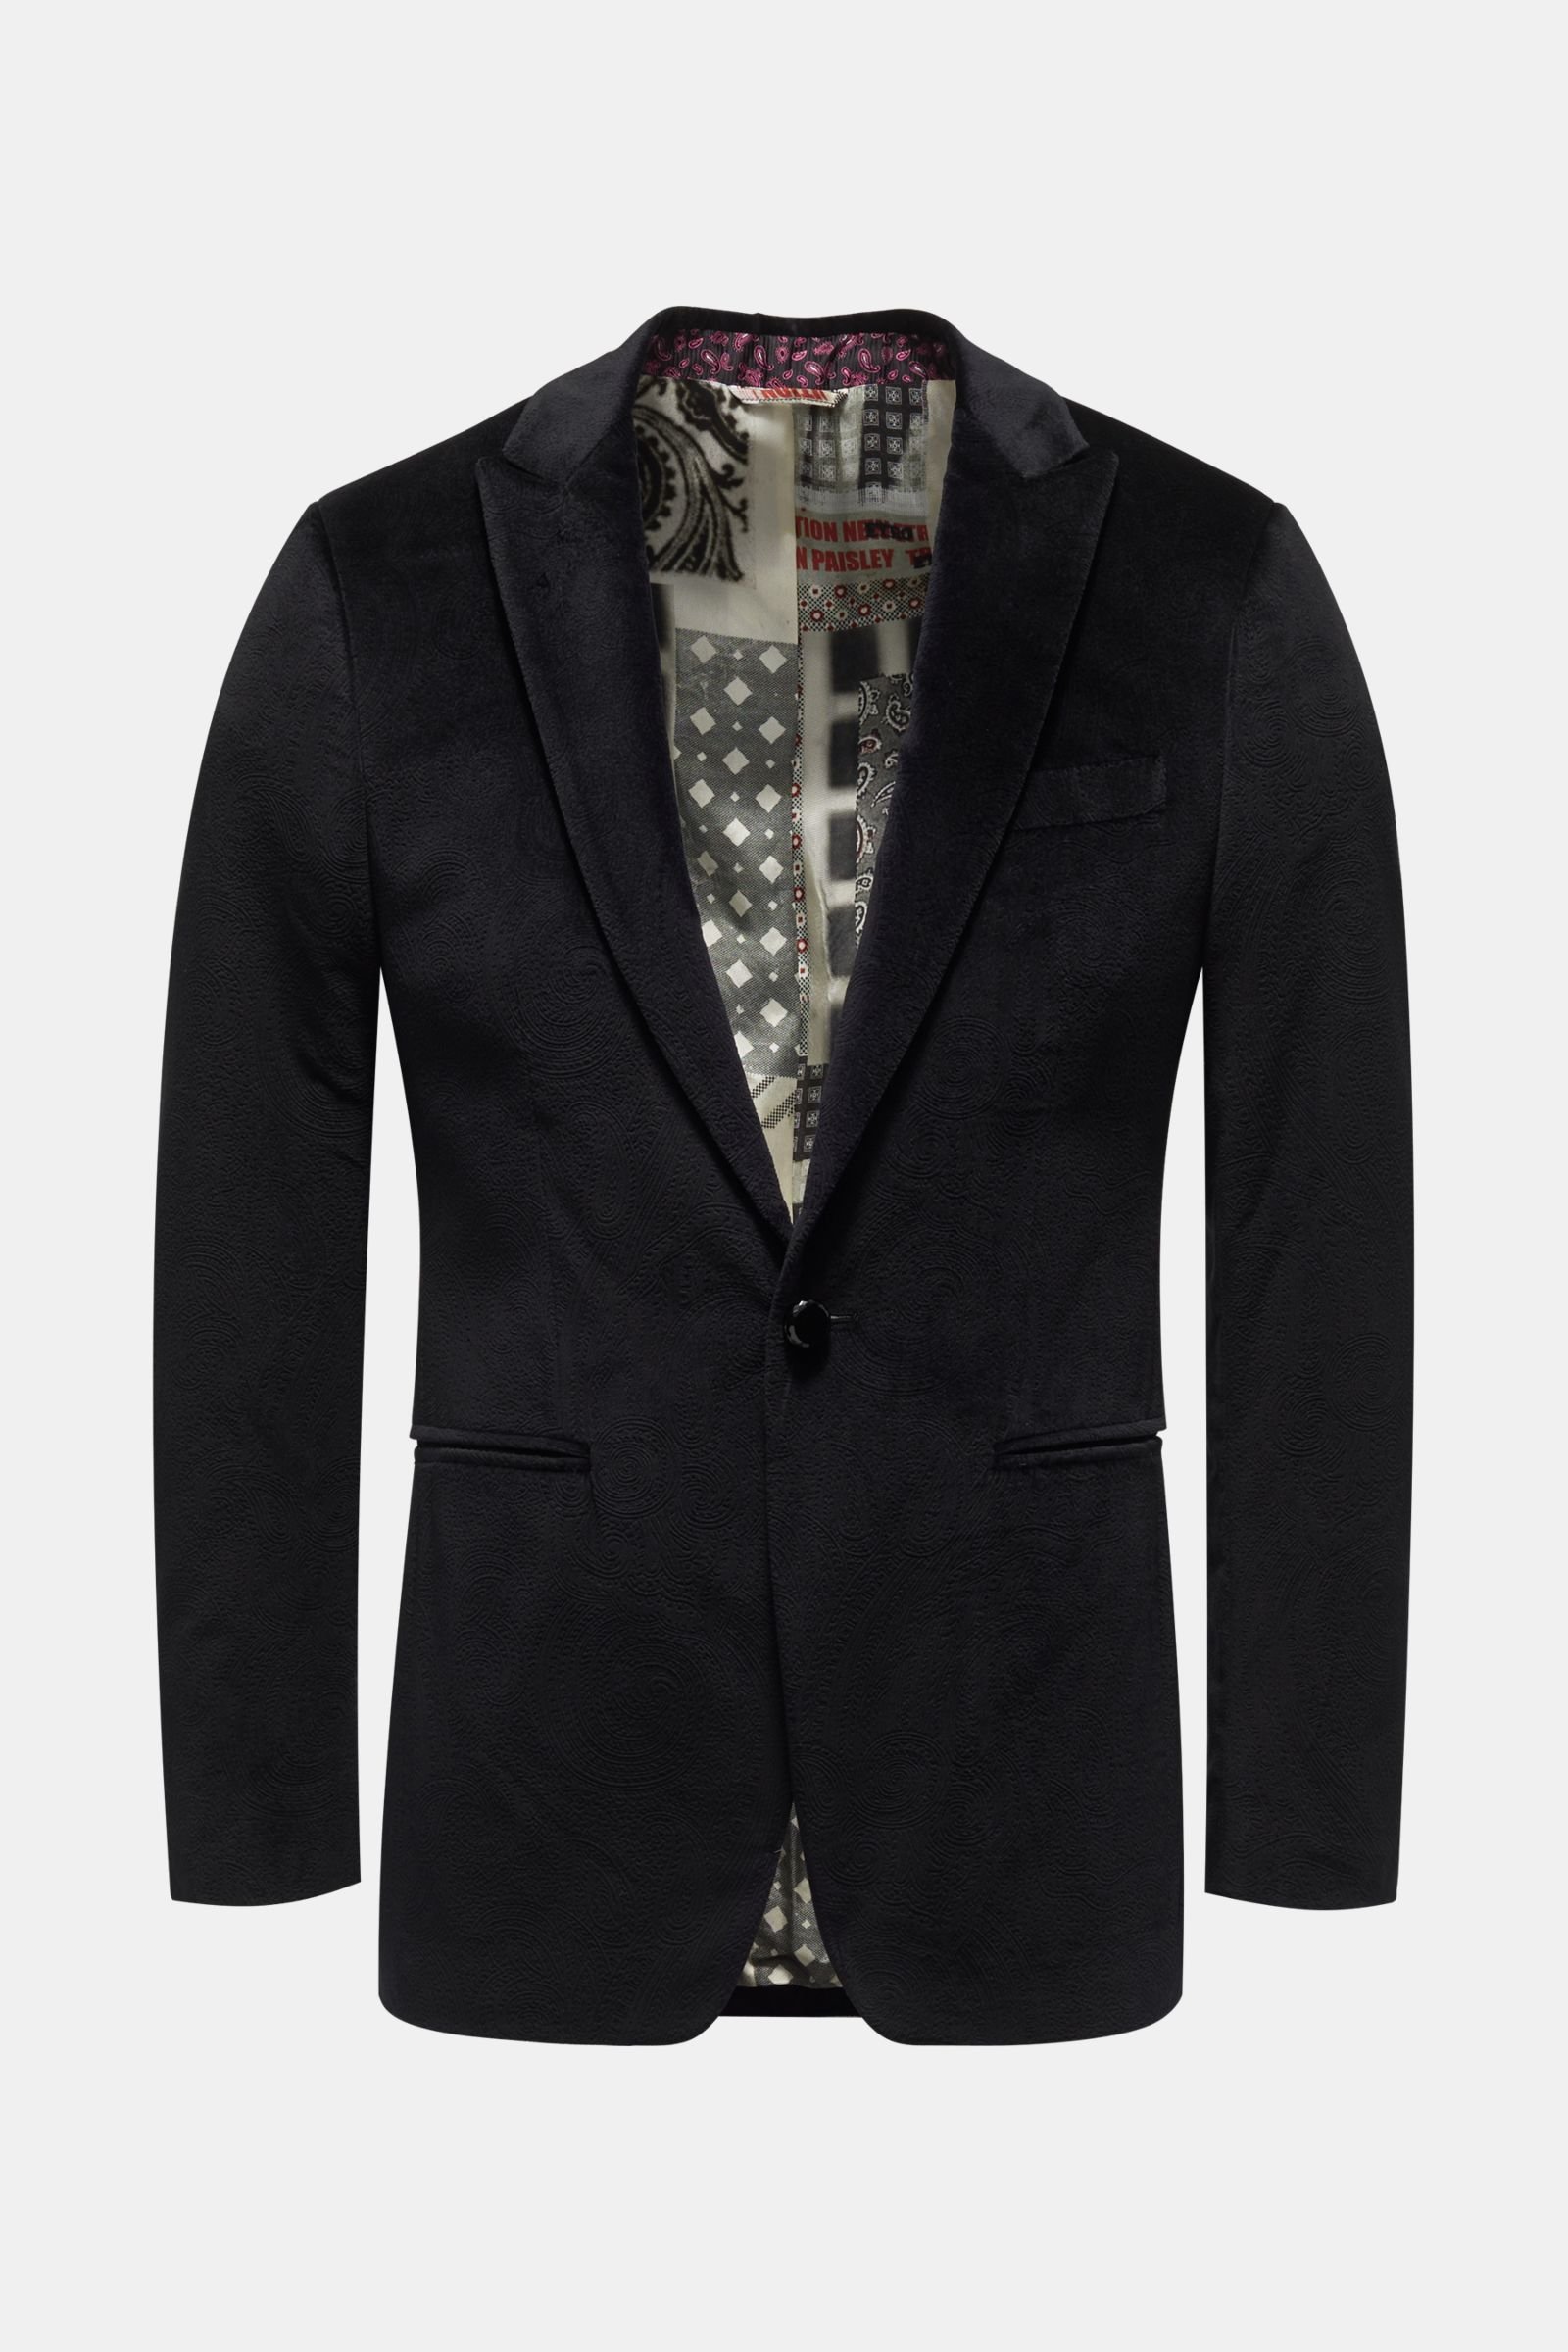 Velvet tuxedo jacket black patterned